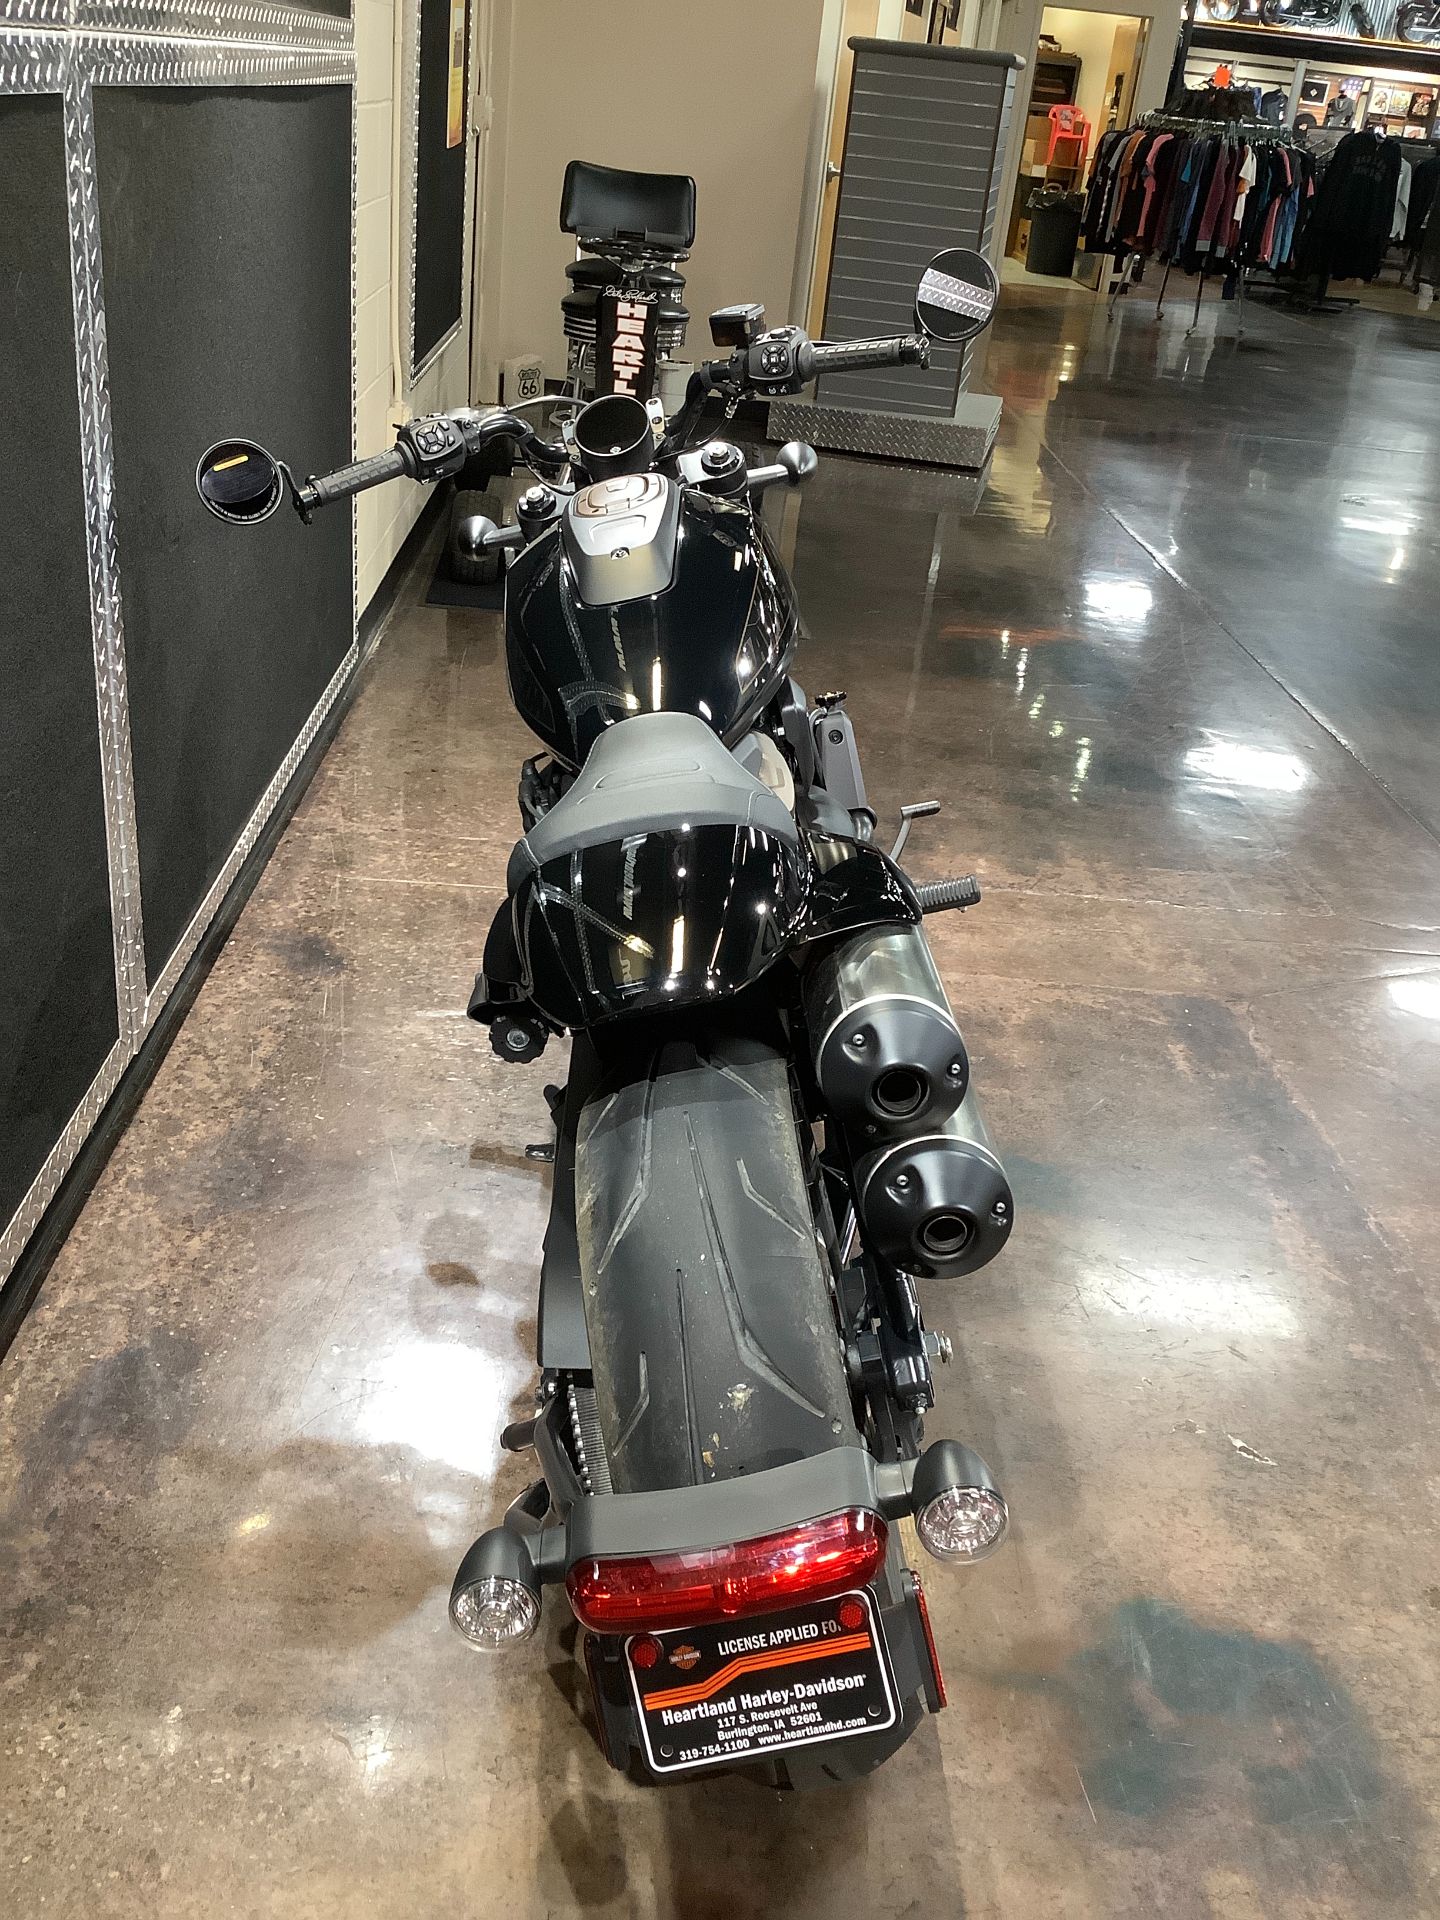 2021 Harley-Davidson Sportster® S in Burlington, Iowa - Photo 13